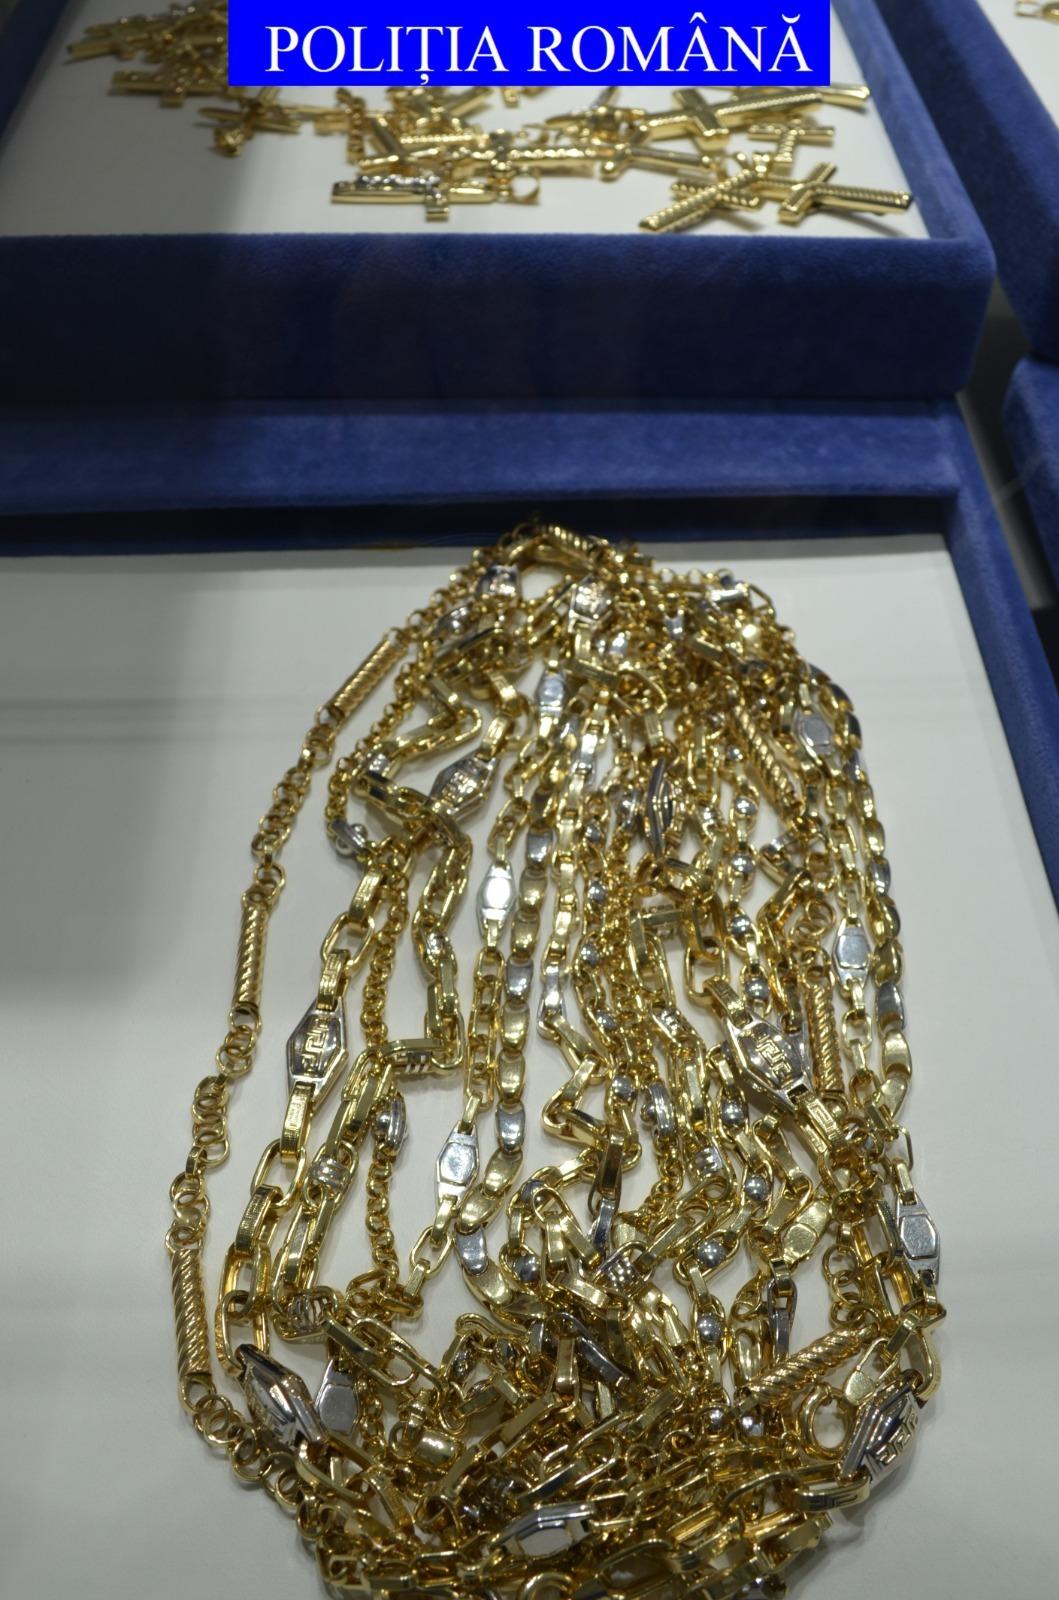 aur confiscat în Galați și Tecuri